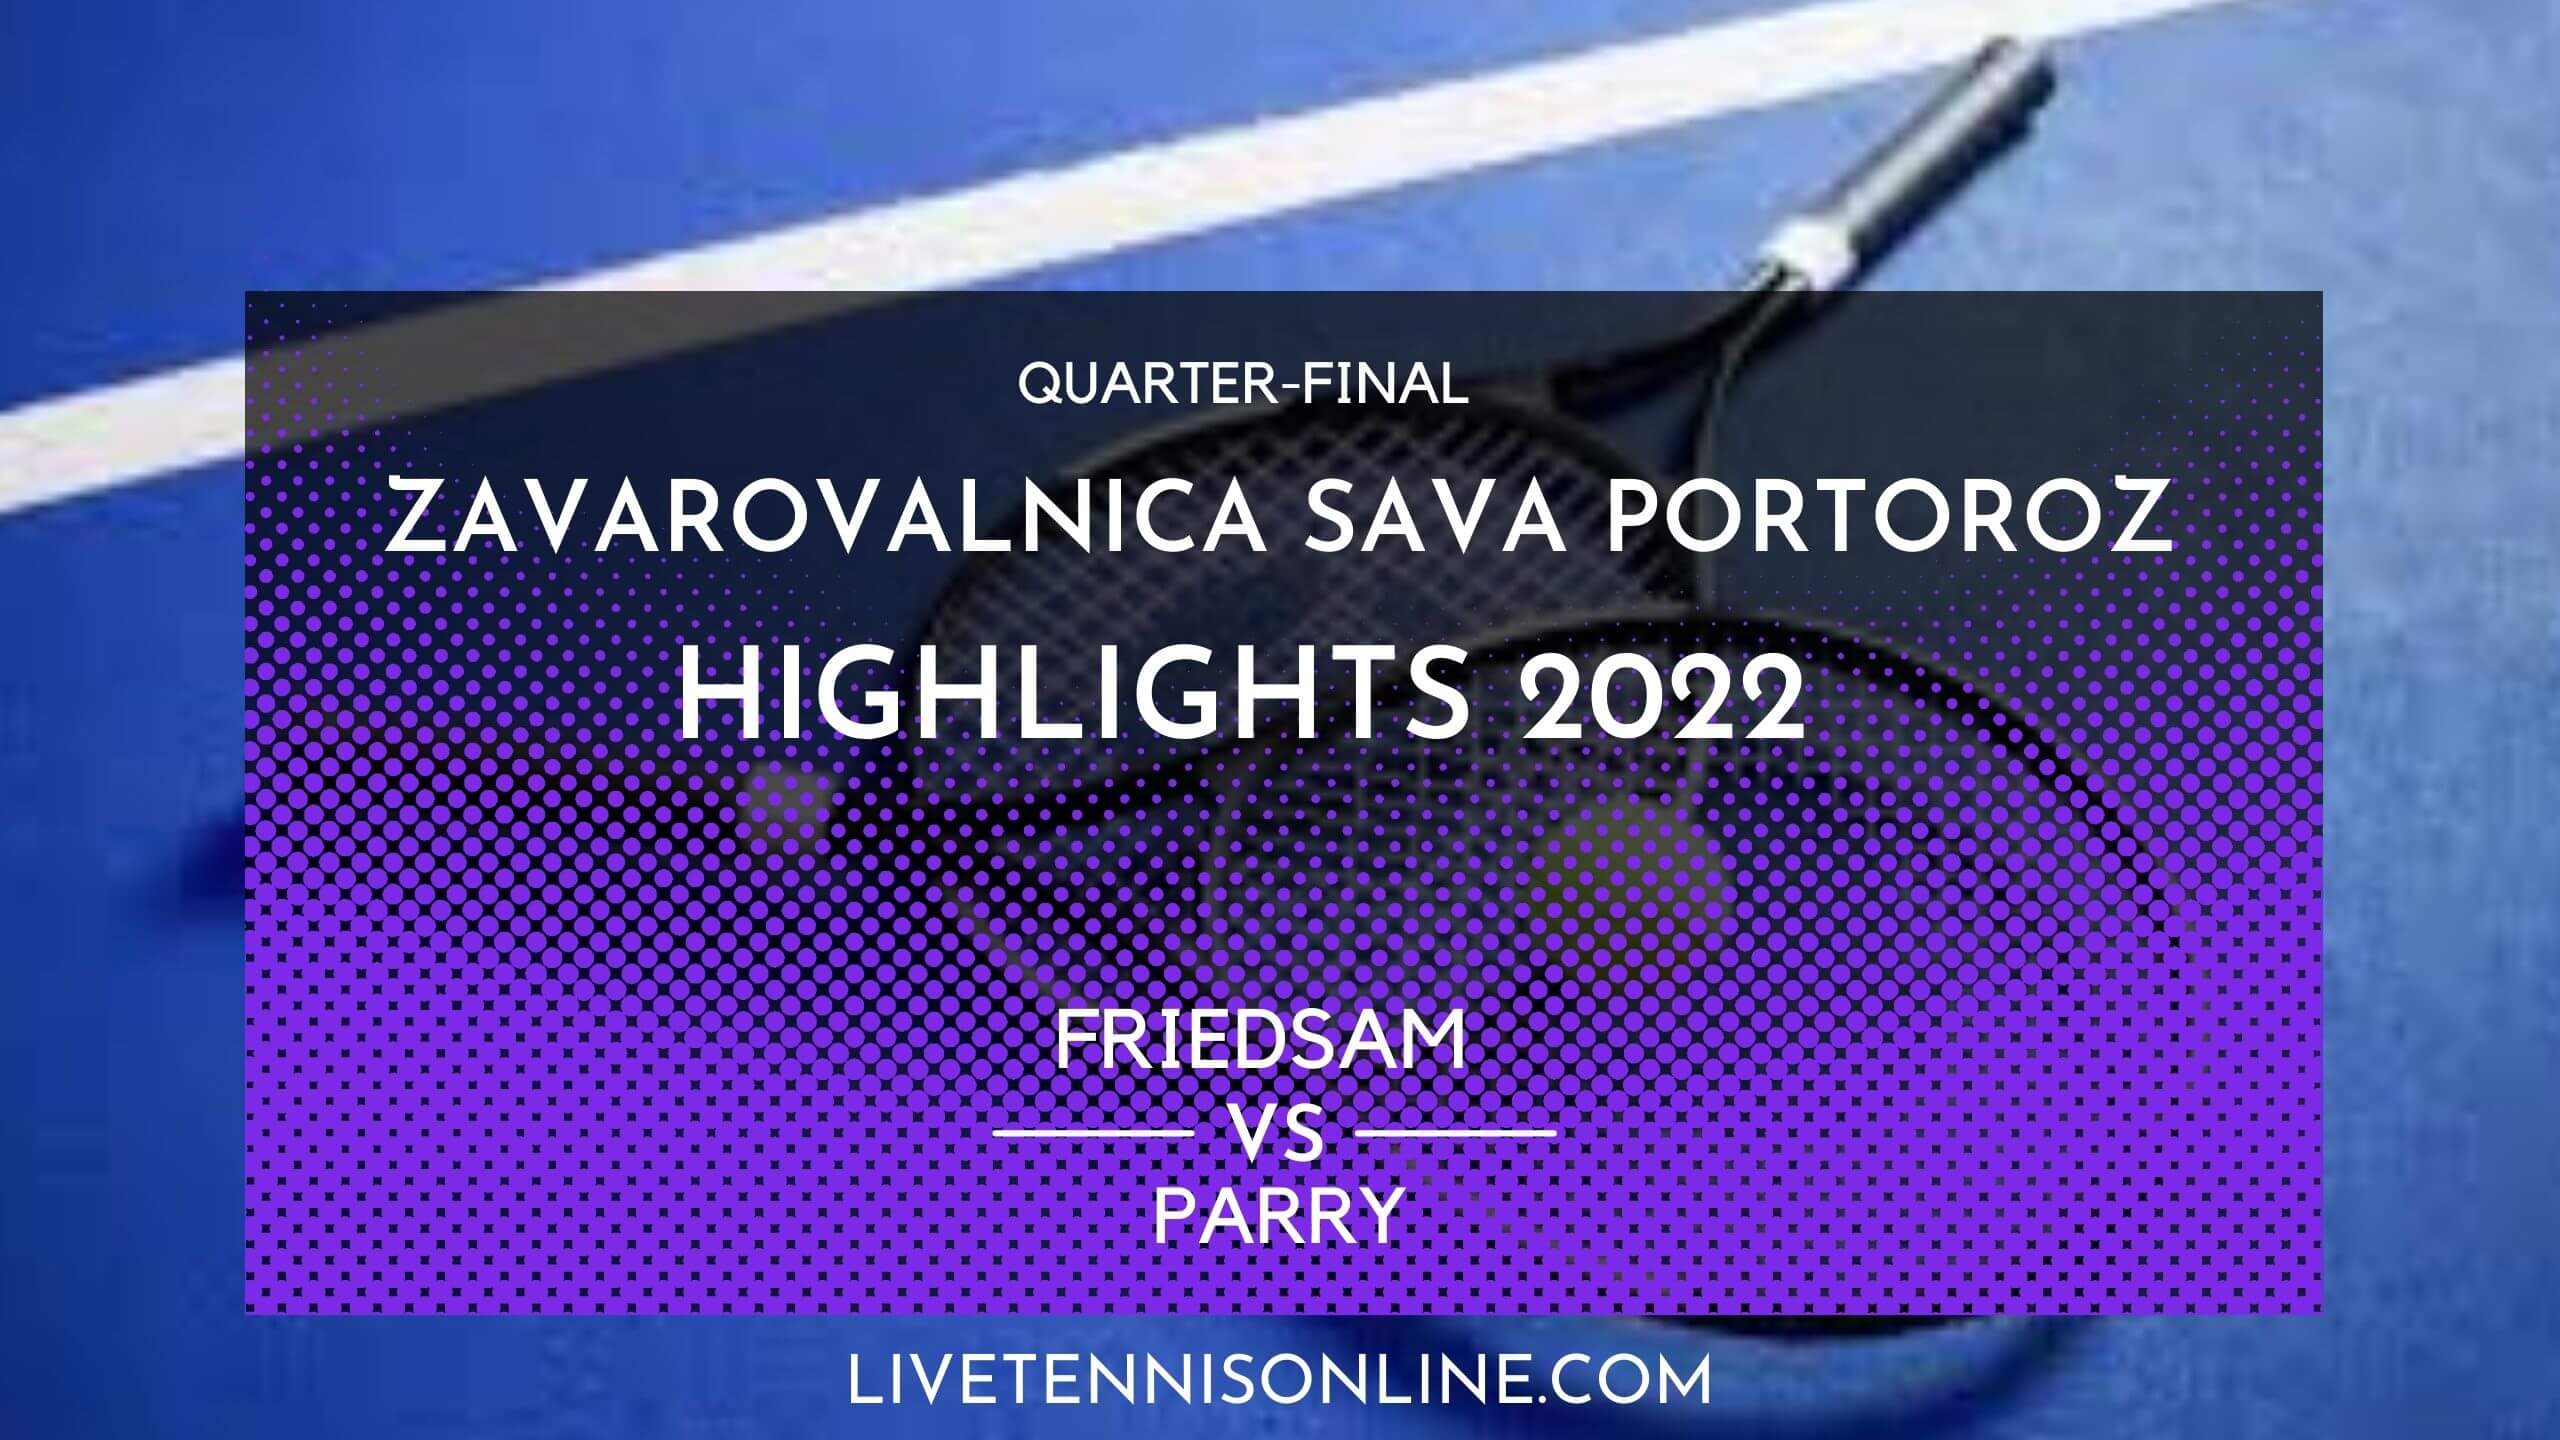 Friedsam Vs Parry QF Highlights 2022 Slovenia Open